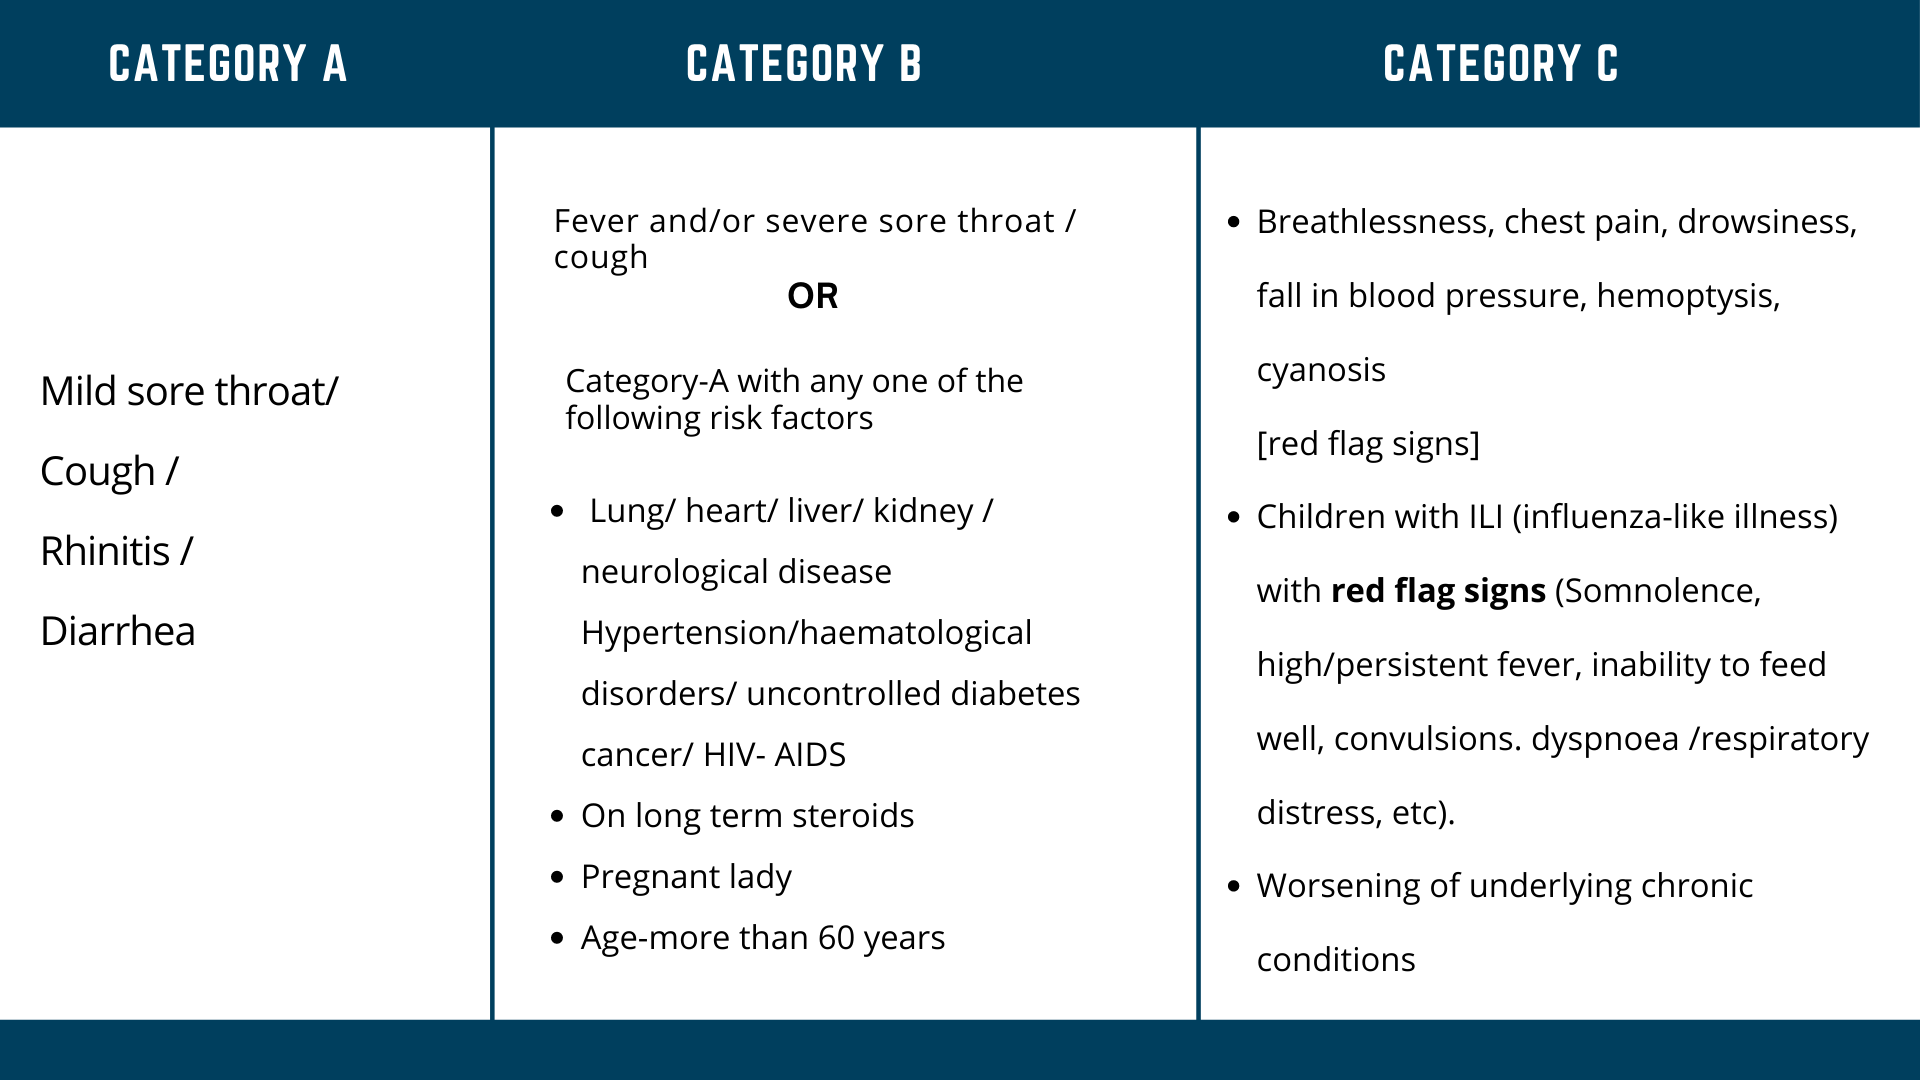 Symptom severity categorization